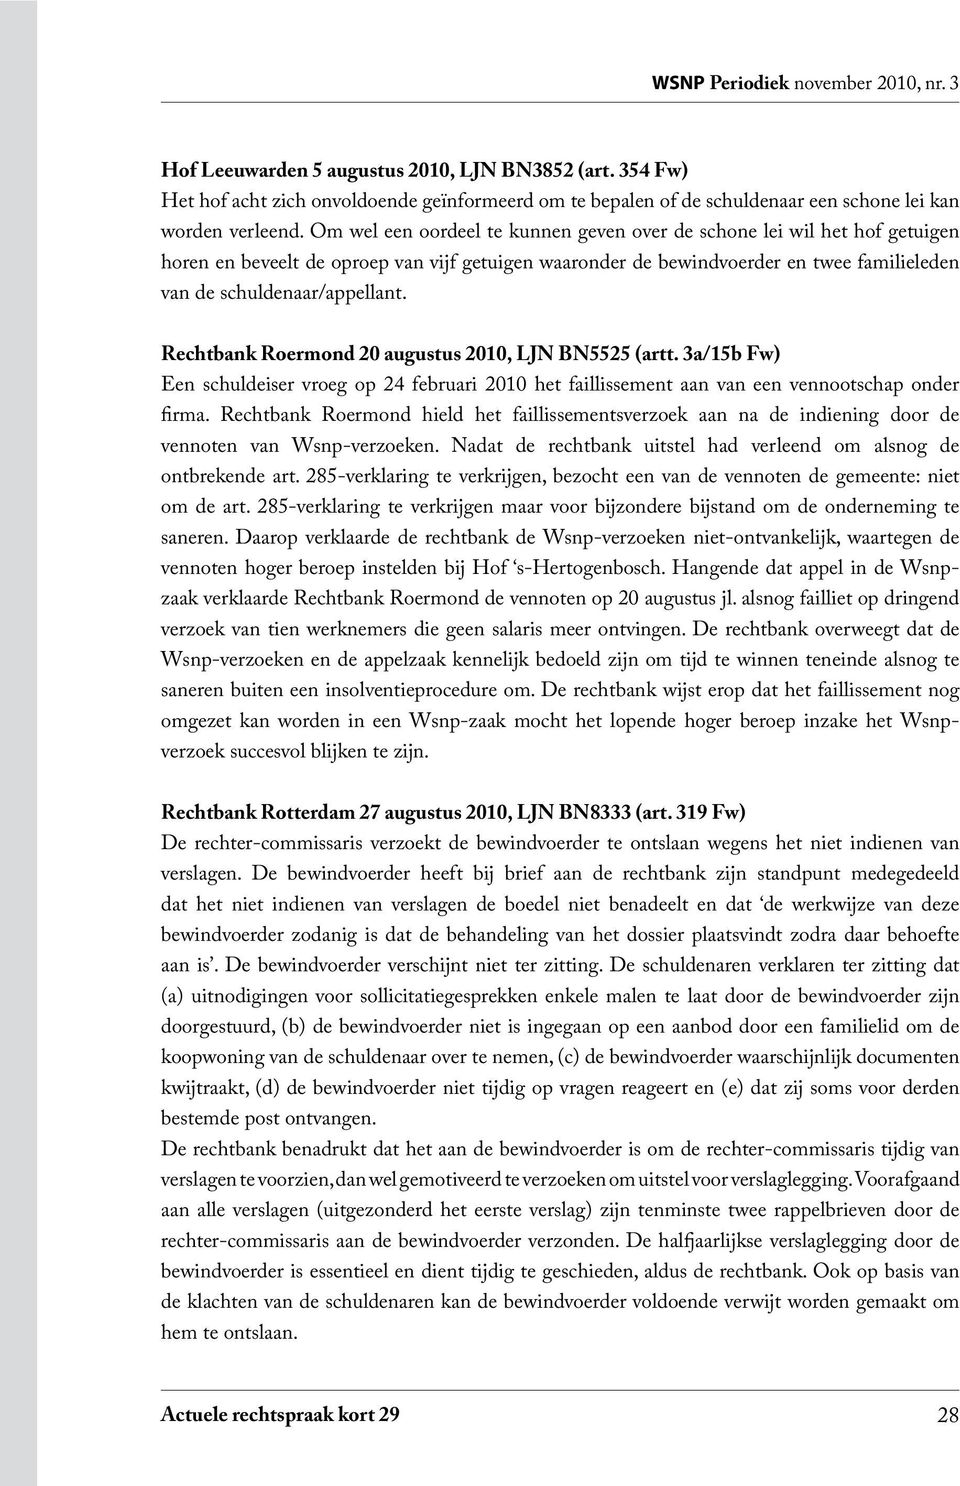 Rechtbank Roermond 20 augustus 2010, LJN BN5525 (artt. 3a/15b Fw) Een schuldeiser vroeg op 24 februari 2010 het faillissement aan van een vennootschap onder firma.